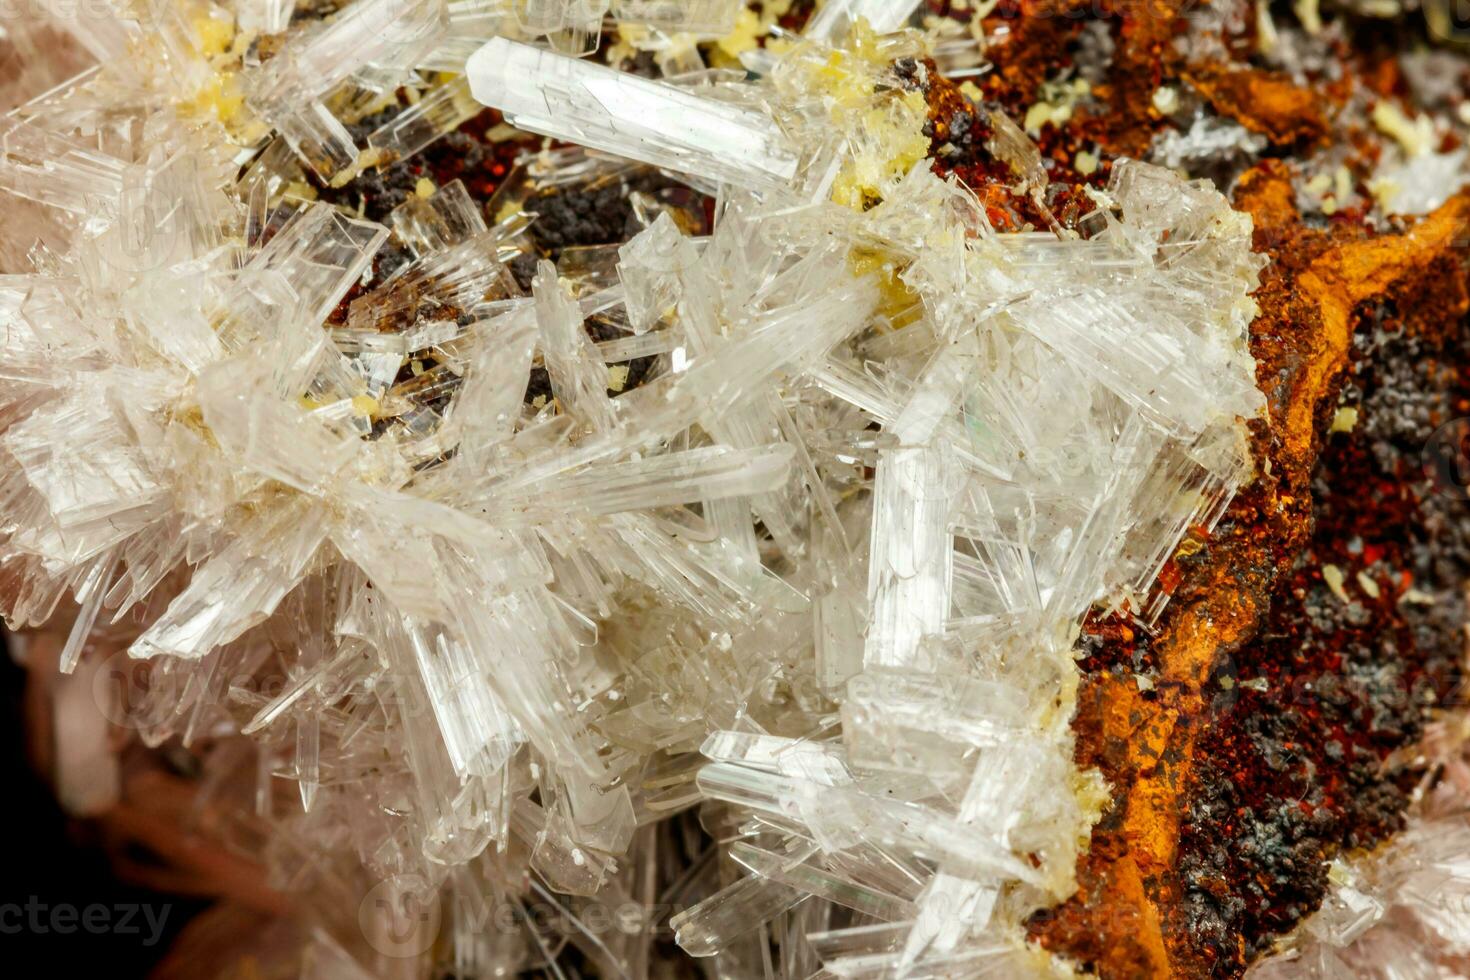 macro mineraal steen Kristallen hemimorfiet rots Aan een zwart achtergrond foto